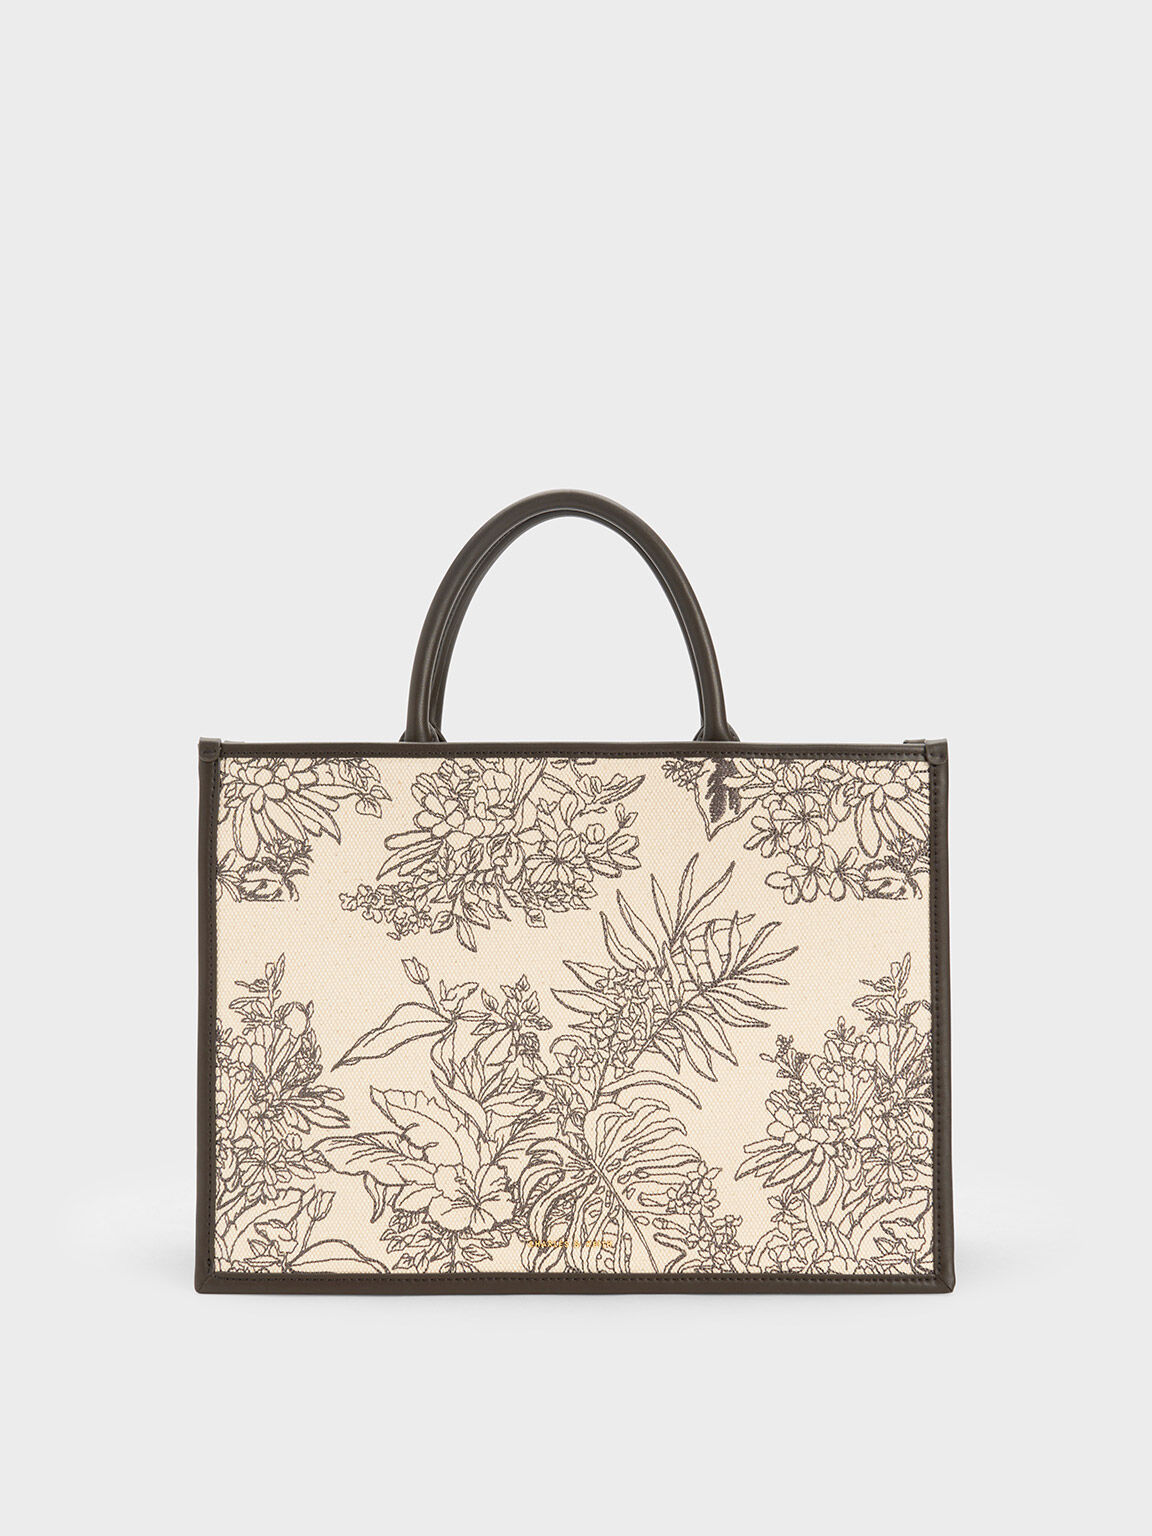 Old Flower Fashionable And Versatile Shoulder Tote Bag